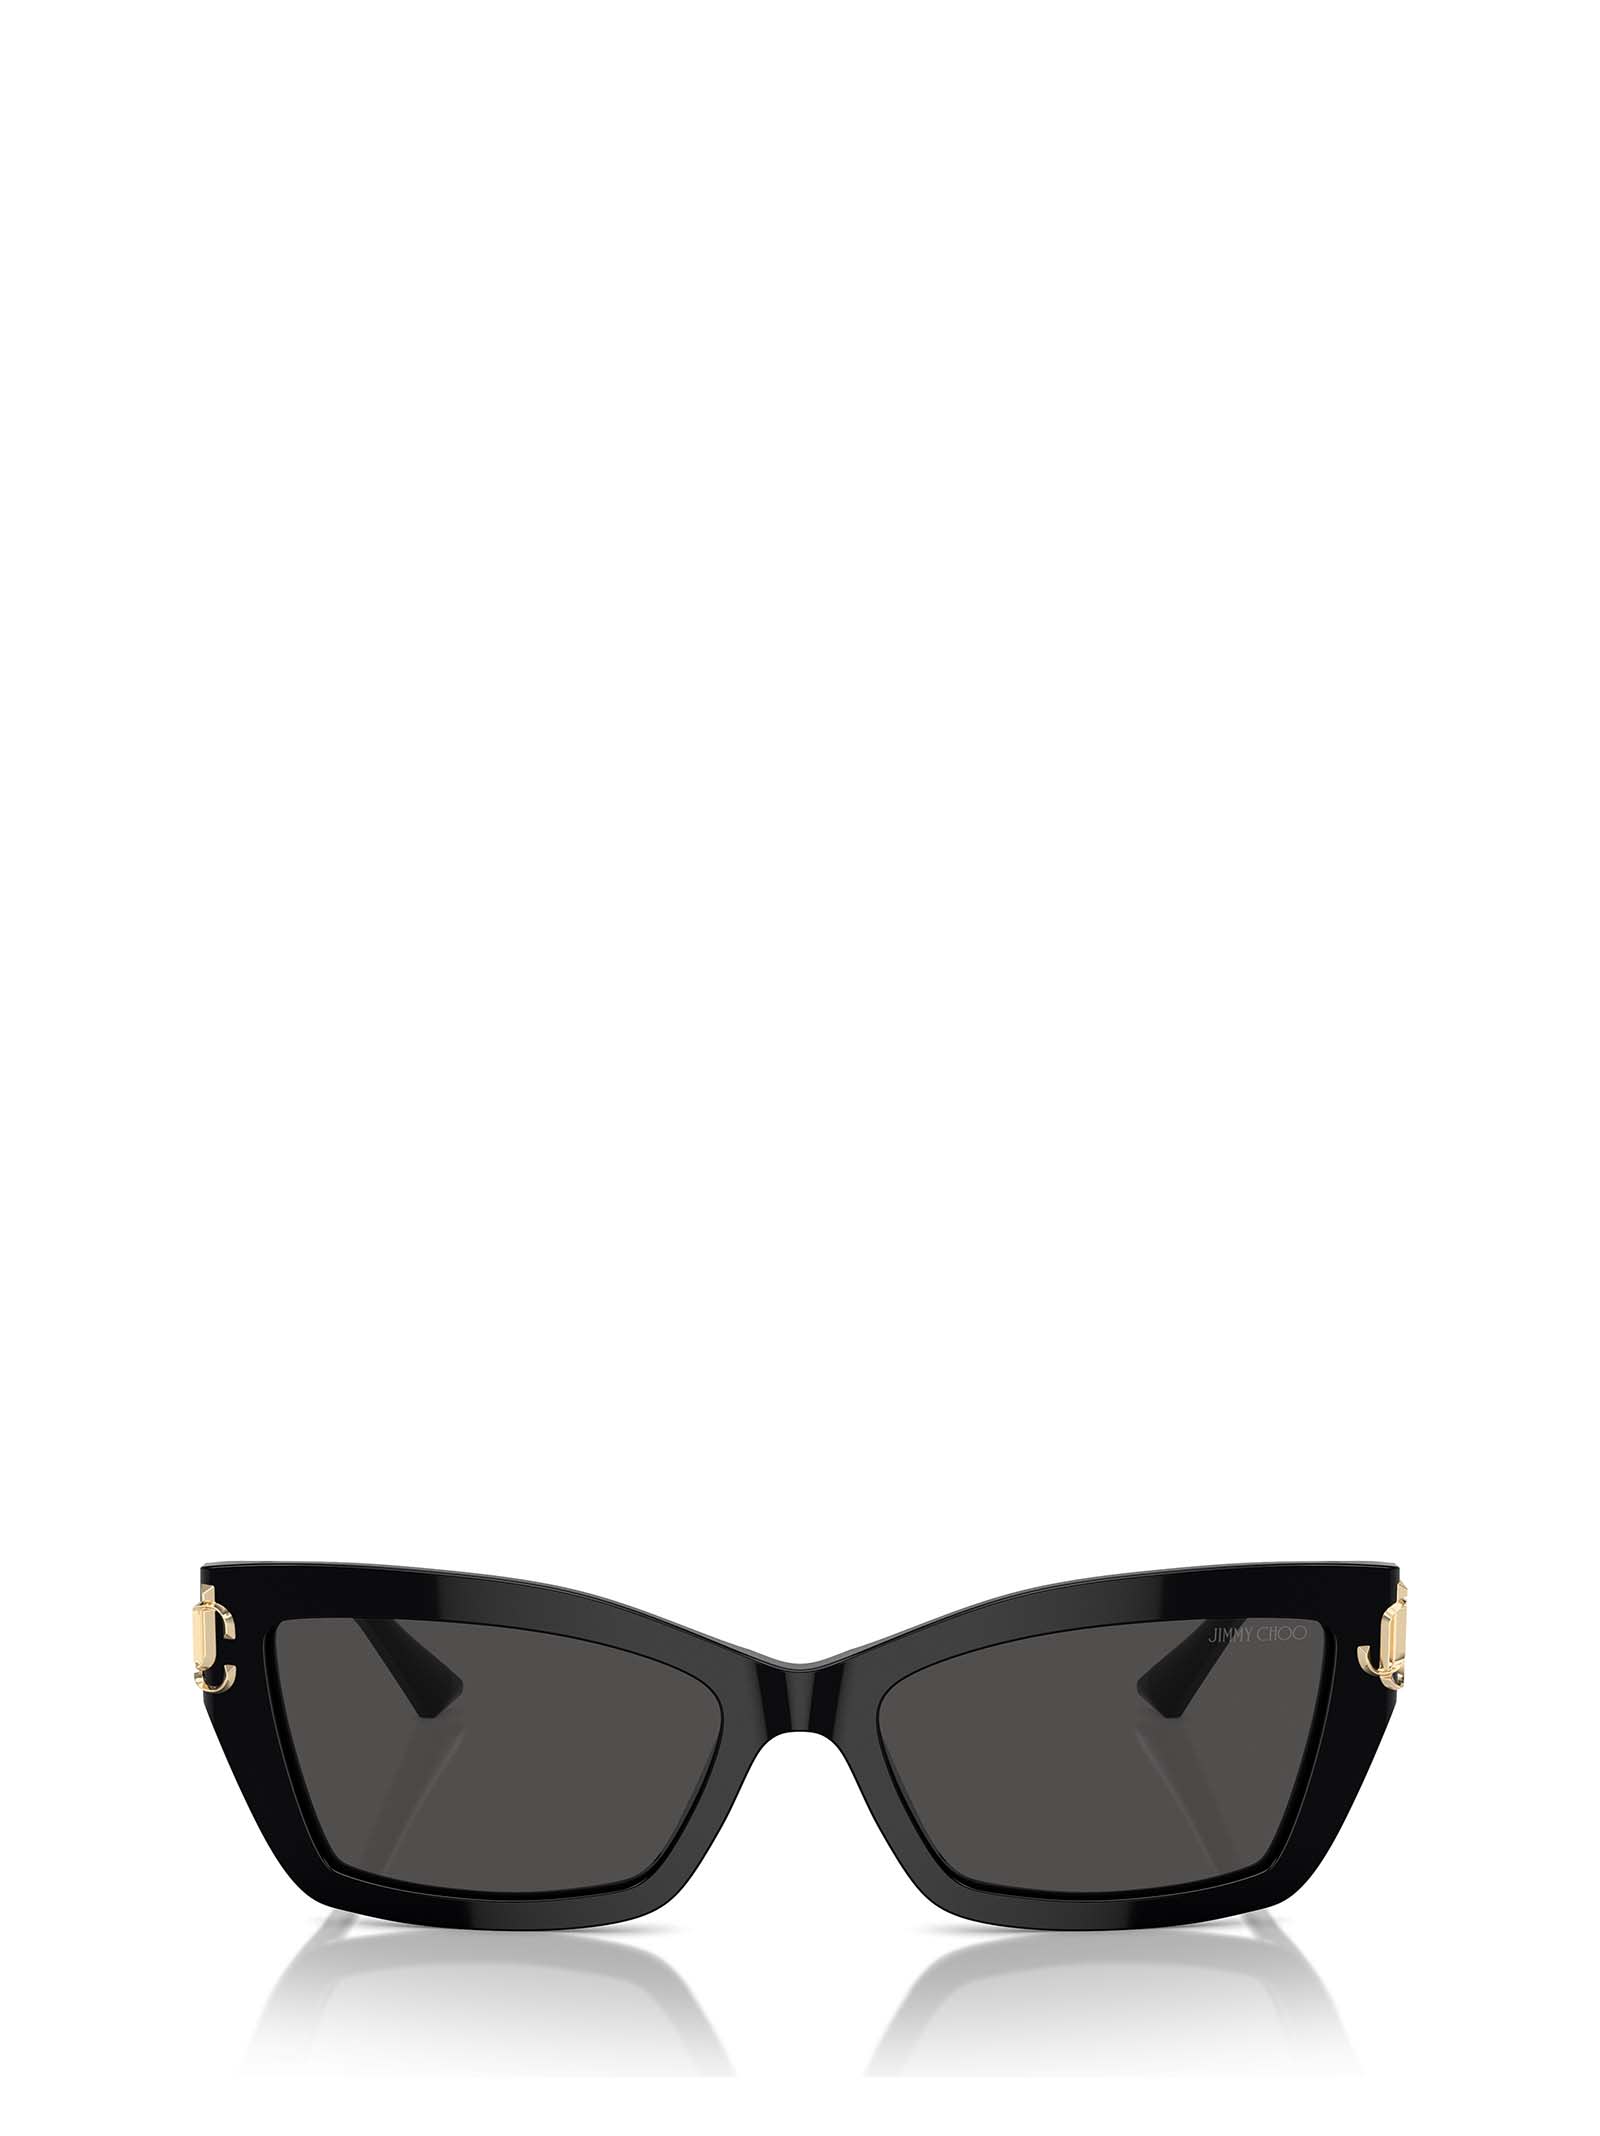 Jc5011u Black Sunglasses